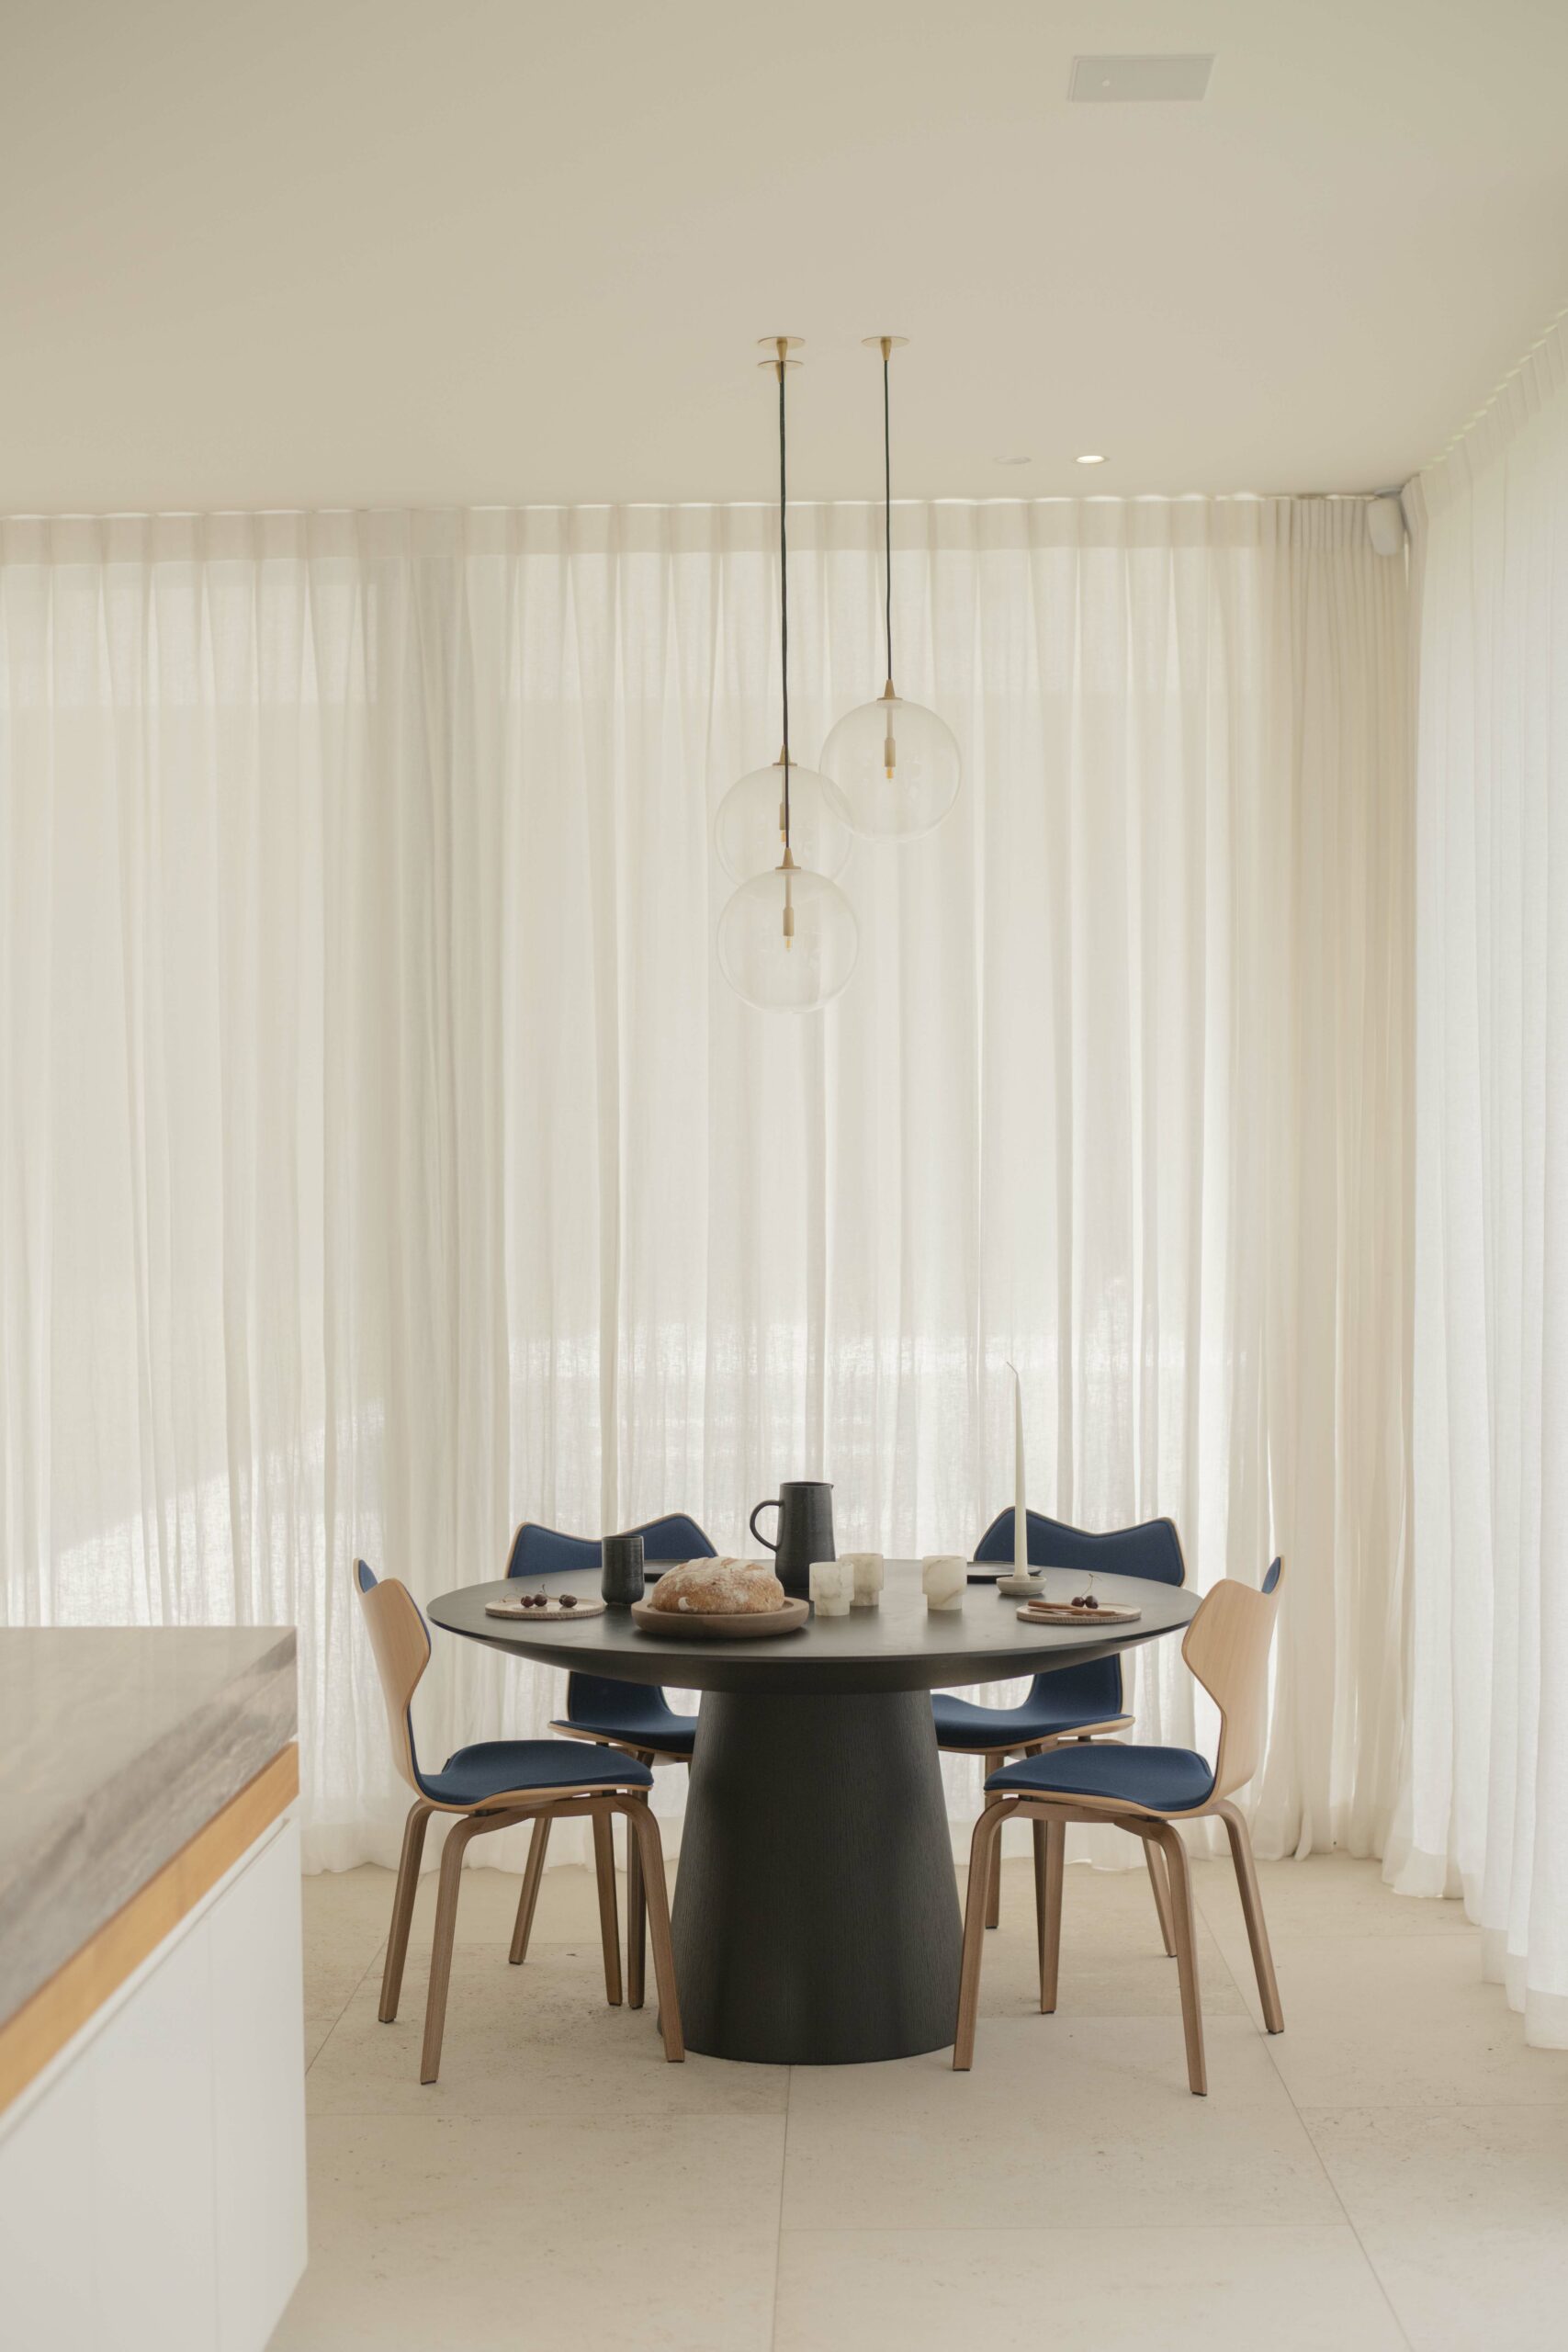 Een elegante eethoek met transparante gordijnen, hangende bolvormige lampen en een donkere ronde tafel. Blauwe stoelen en minimalistische decoratie versterken de serene sfeer.